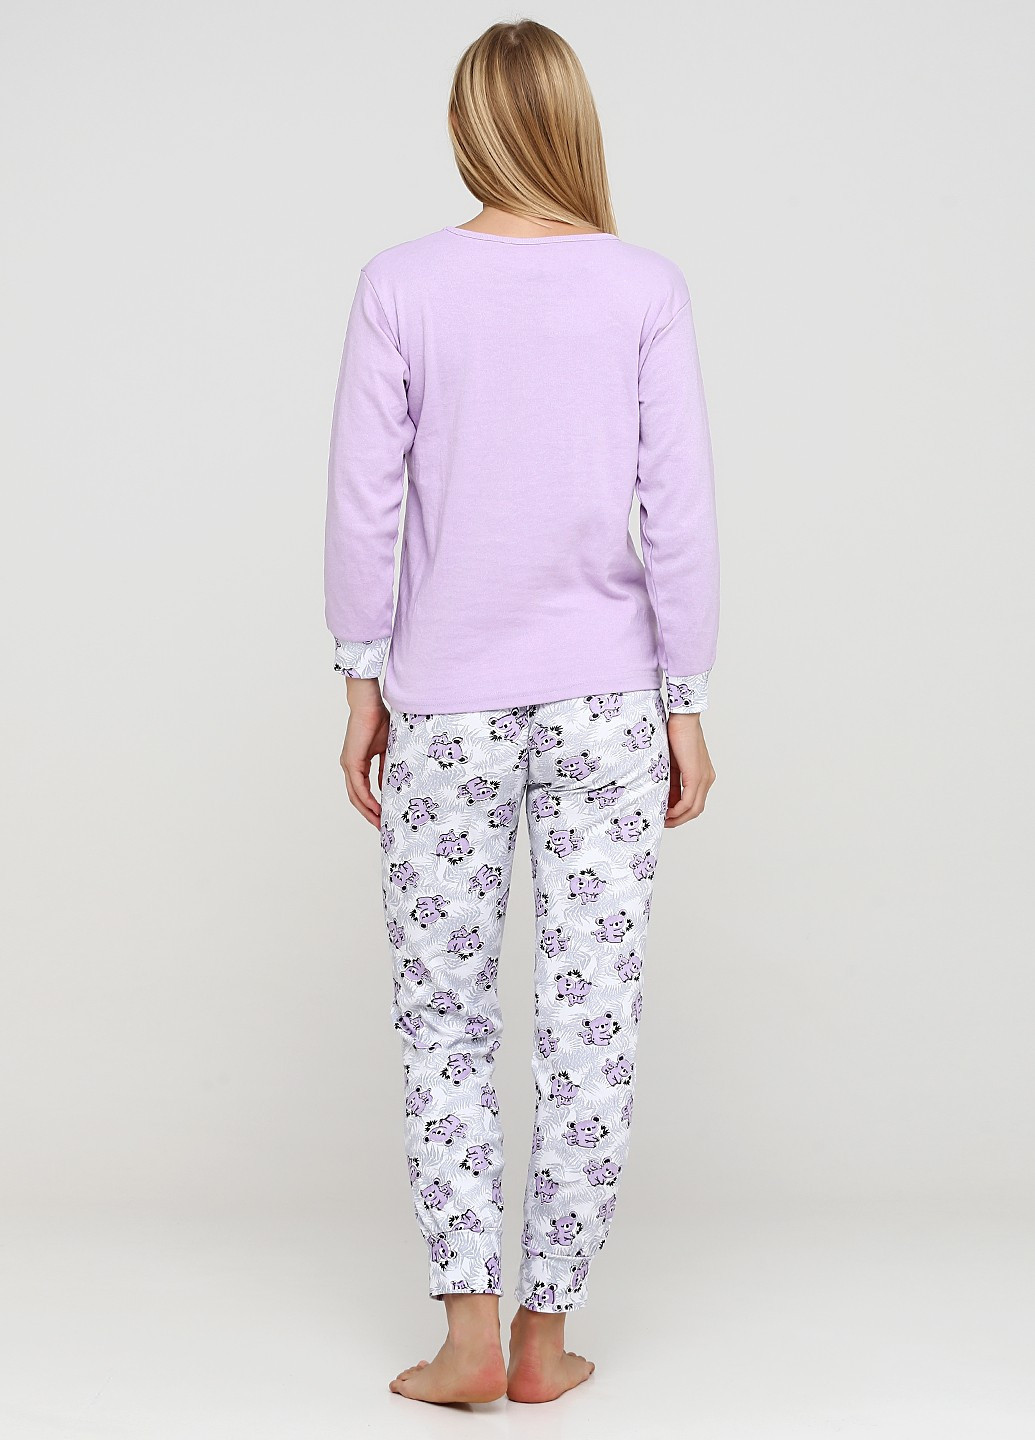 Фиолетовая зимняя комплект плотный трикотаж (свитшот, брюки) Sude